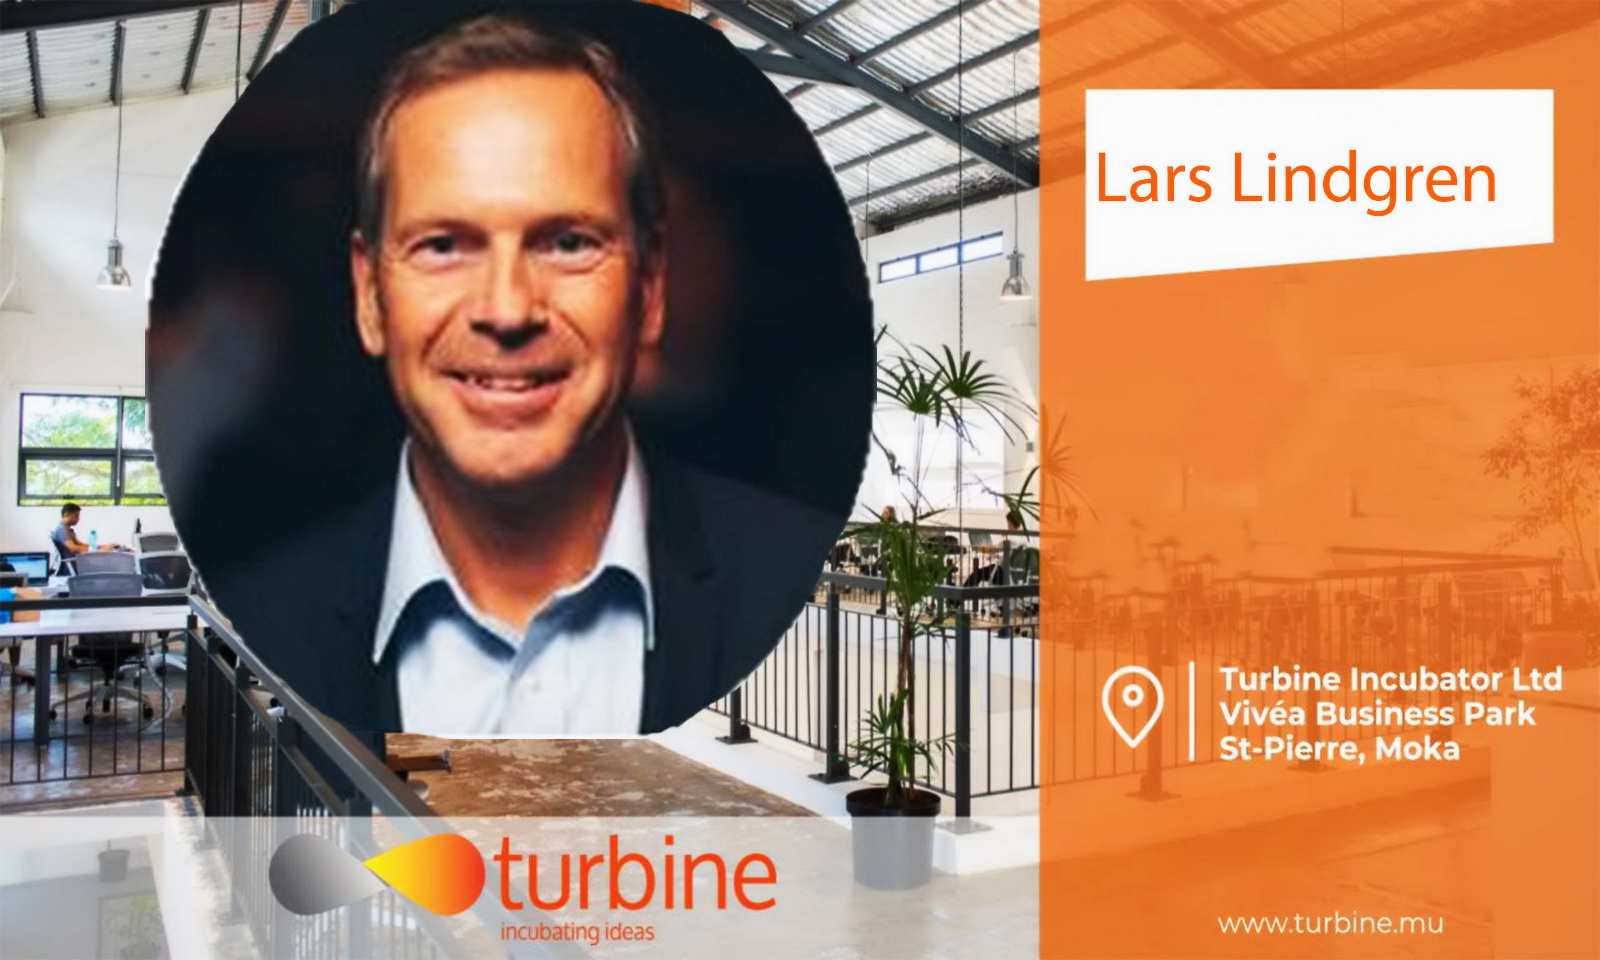 Lars Lindgren un expert au service des startups locales